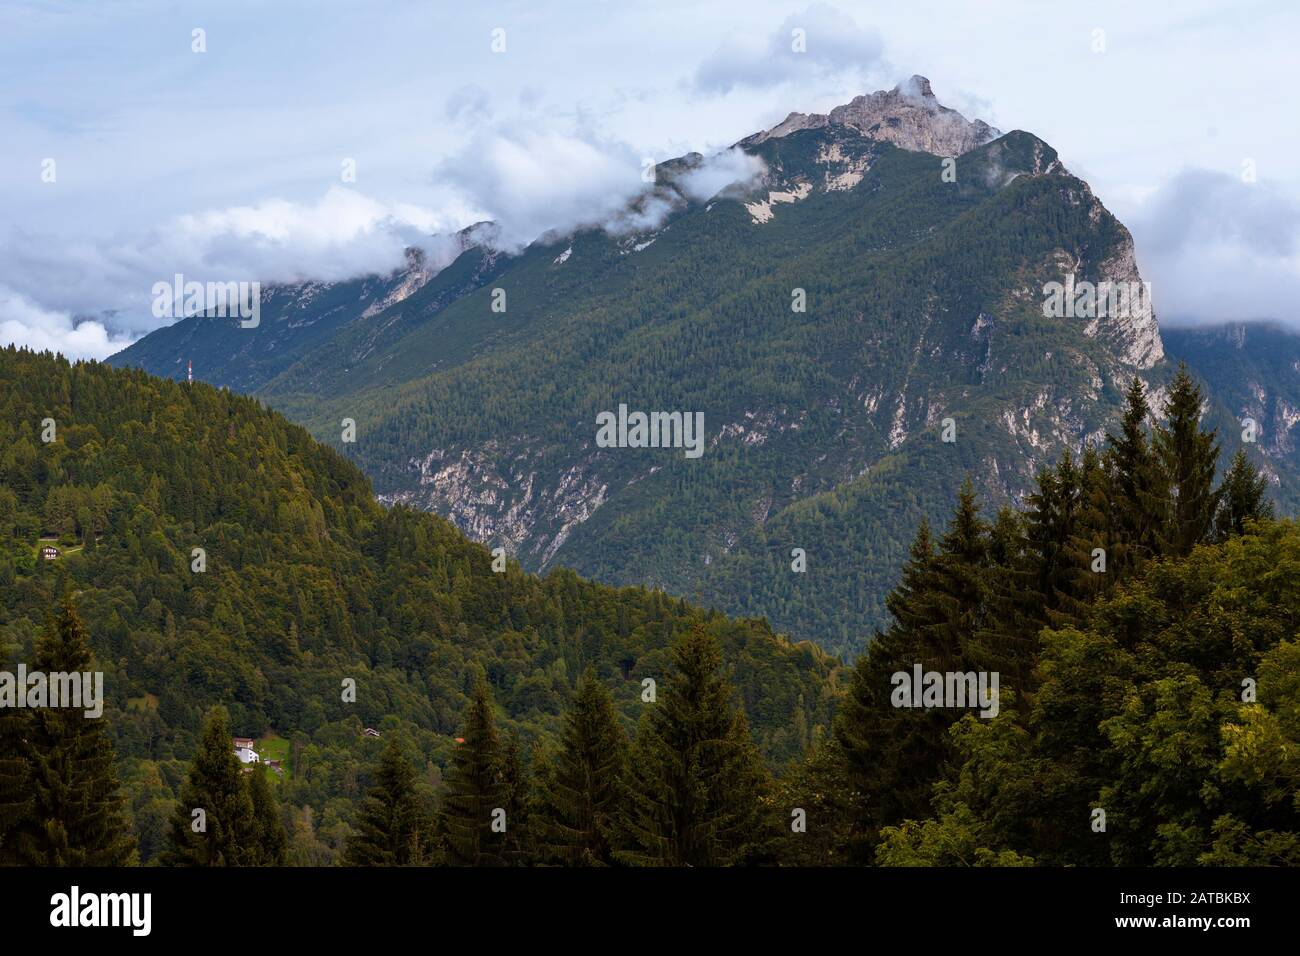 Piz di Mezzodi in the Monti del Sole range, Belluno Dolomites, Veneto, Italy Stock Photo